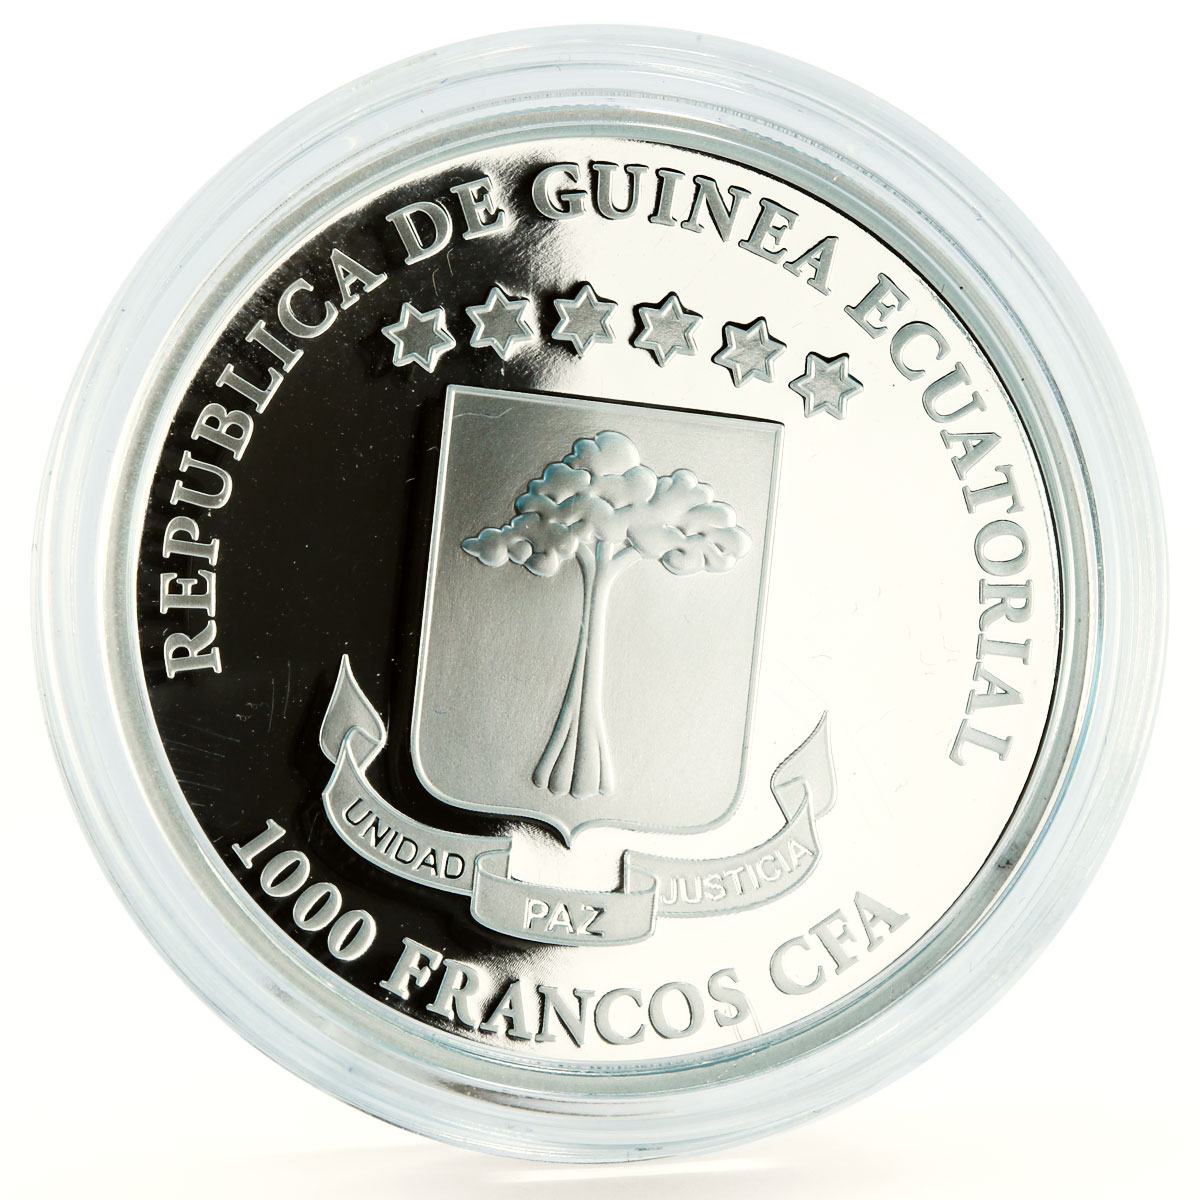 Equatorial Guinea 1000 francs Pero Escobar Ship Sea Trade proof silver coin 2015